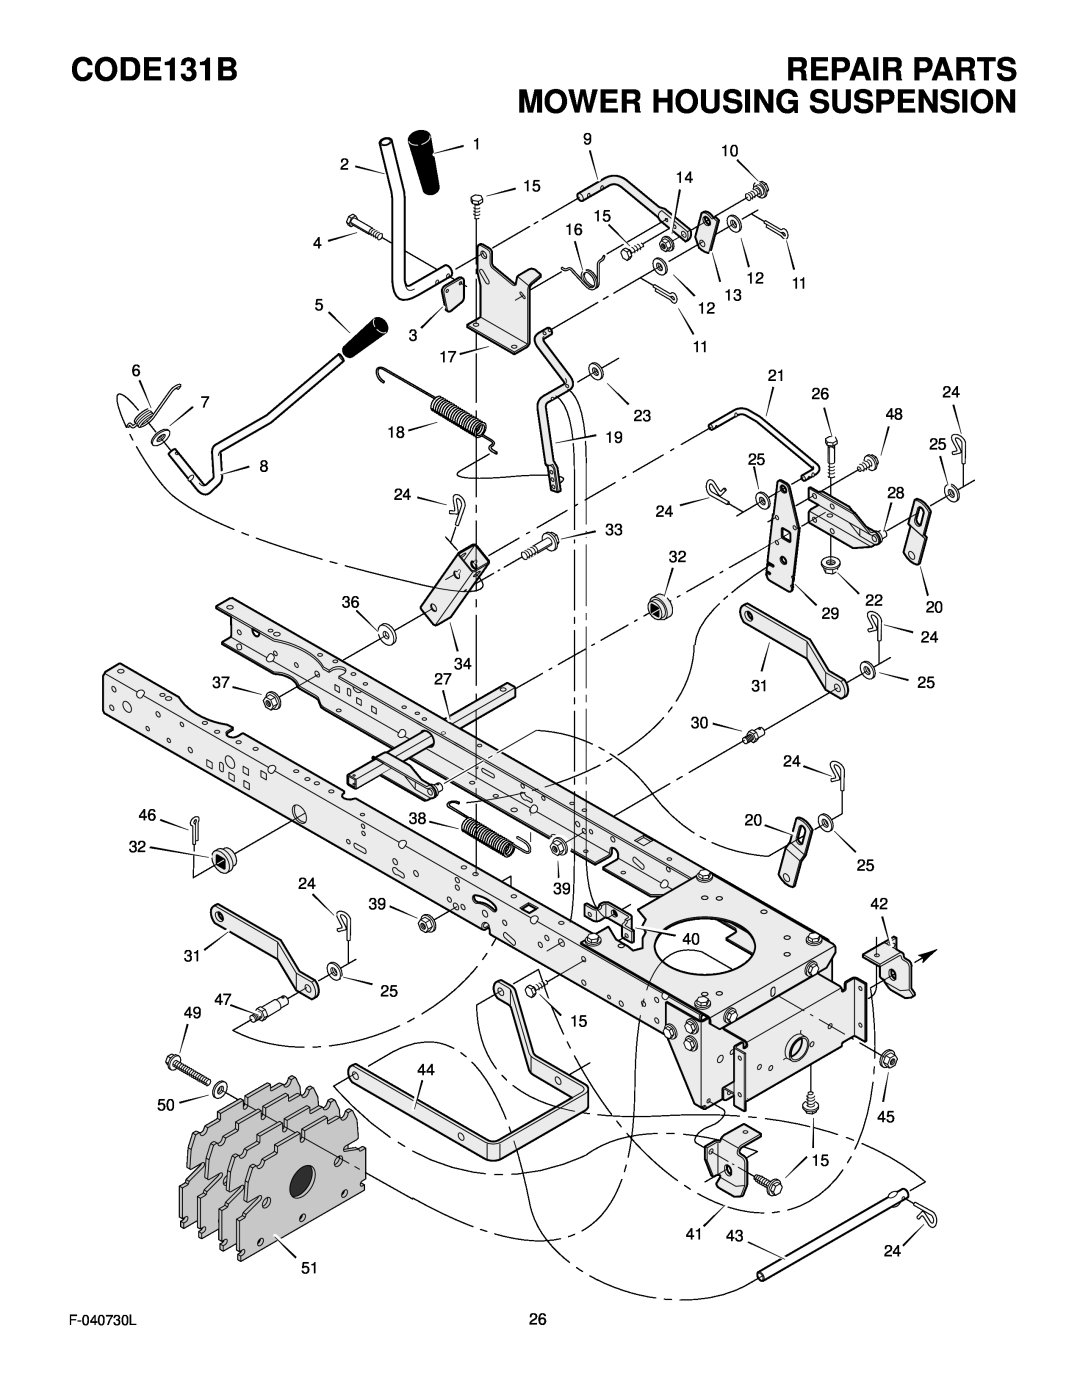 Hayter Mowers manual Mower Housing Suspension, CODE131B, Repair Parts, F-040730L 